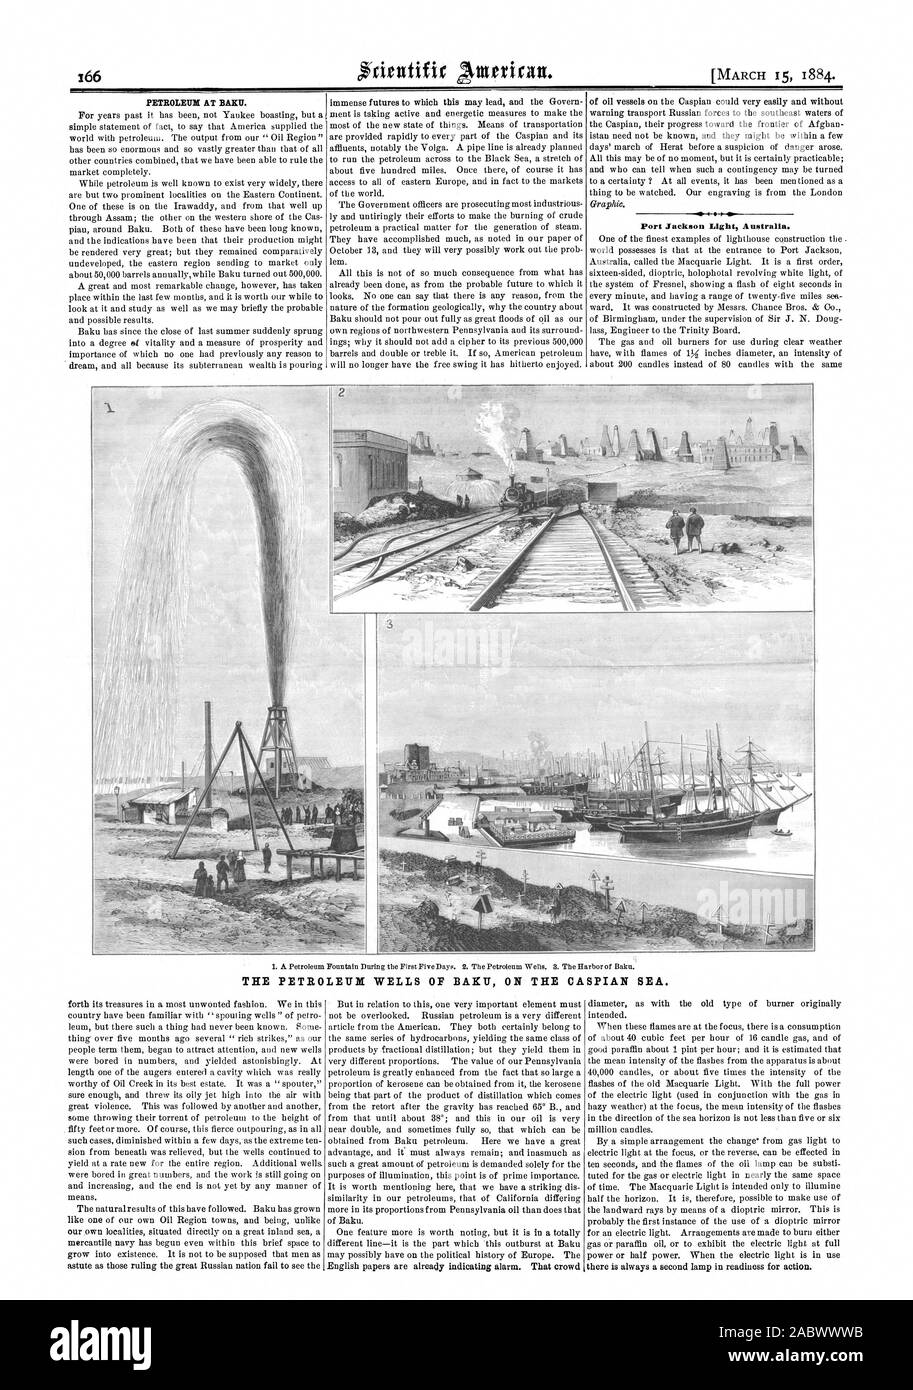 Port Jackson Licht Australien. WELLS das Erdöl von Baku AM KASPISCHEN MEER., Scientific American, 84-03-15 Stockfoto